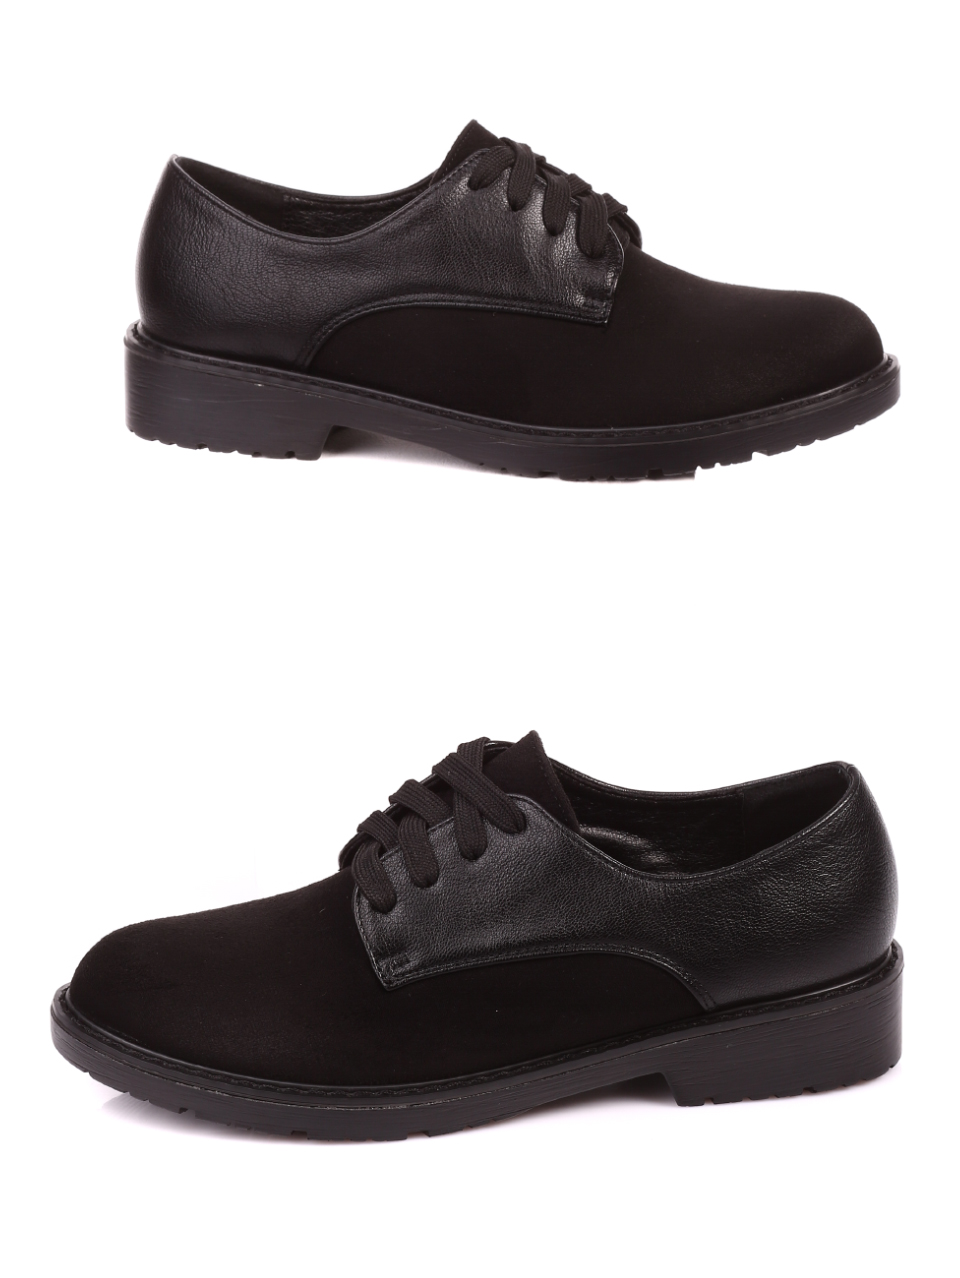 Ежедневни дамски обувки в черно 3C-20597 black-19533